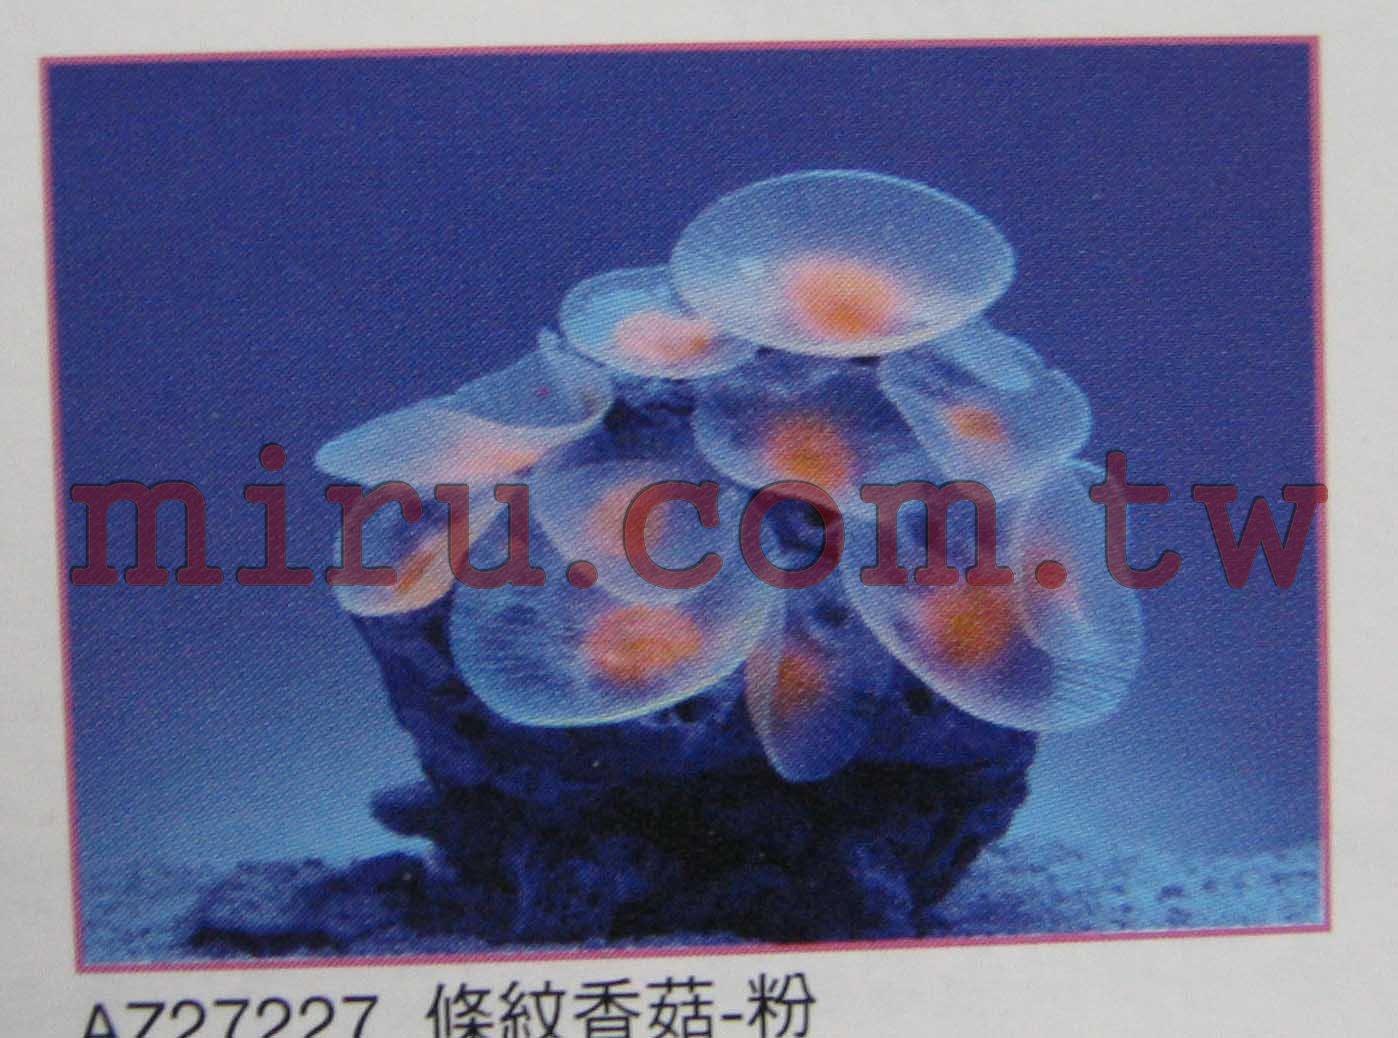 AZOO霓虹螢光珊瑚 條紋香菇珊瑚(綠,紅,粉色,黃)